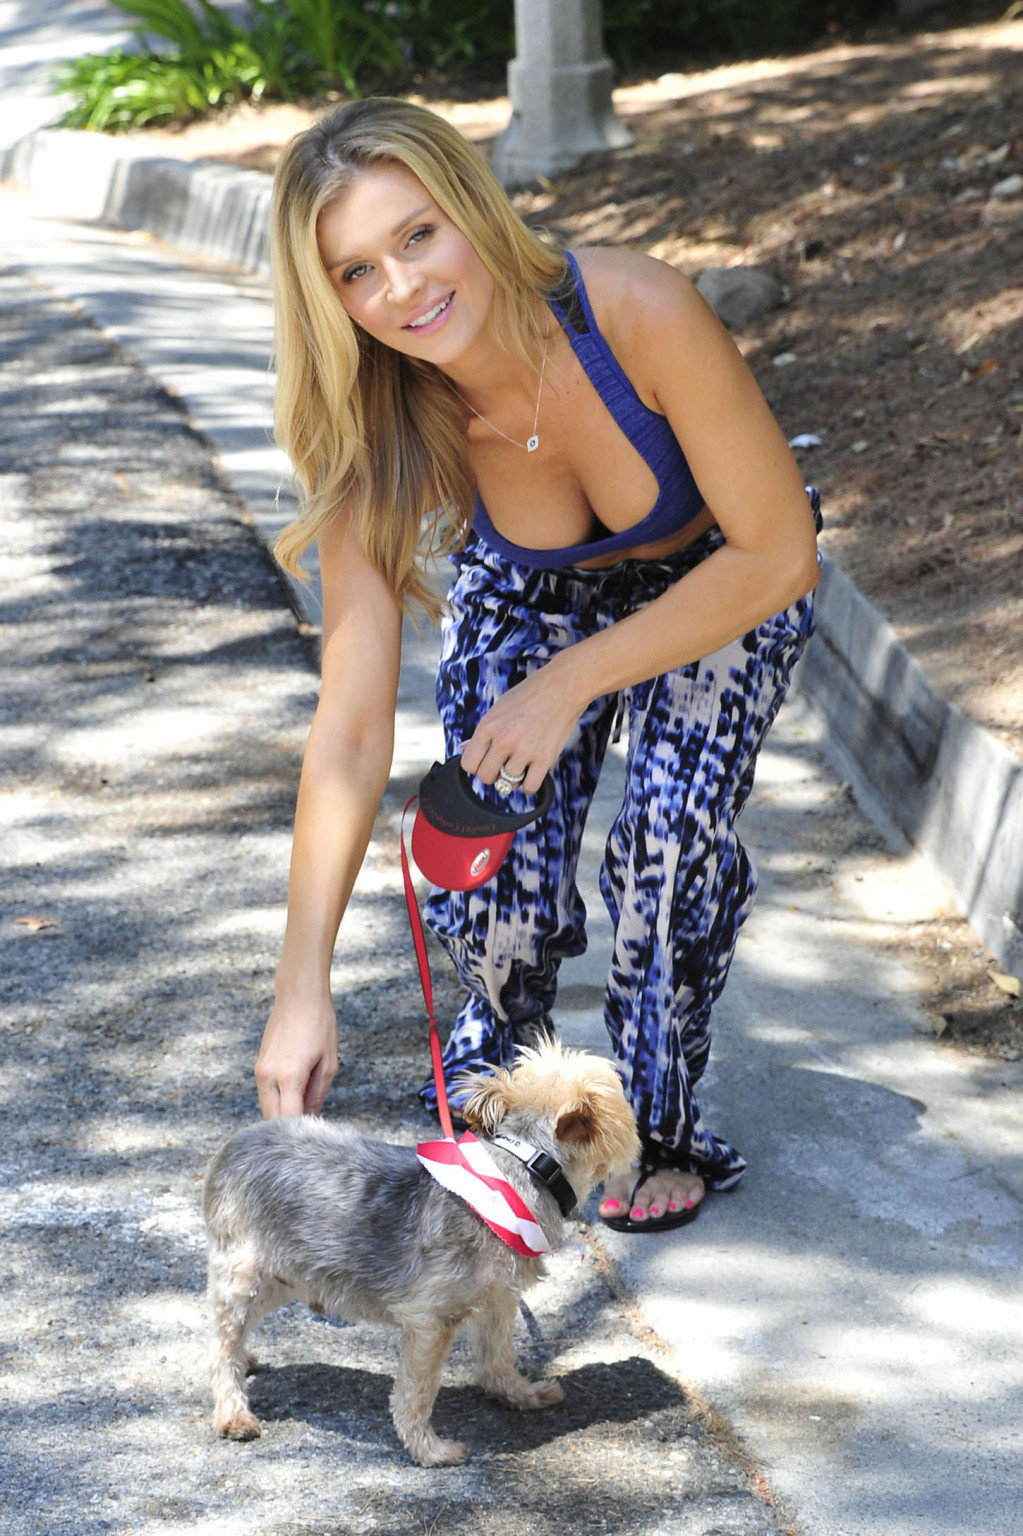 Joanna krupa tetona con un sujetador deportivo azul paseando a su perro en miami
 #75185052